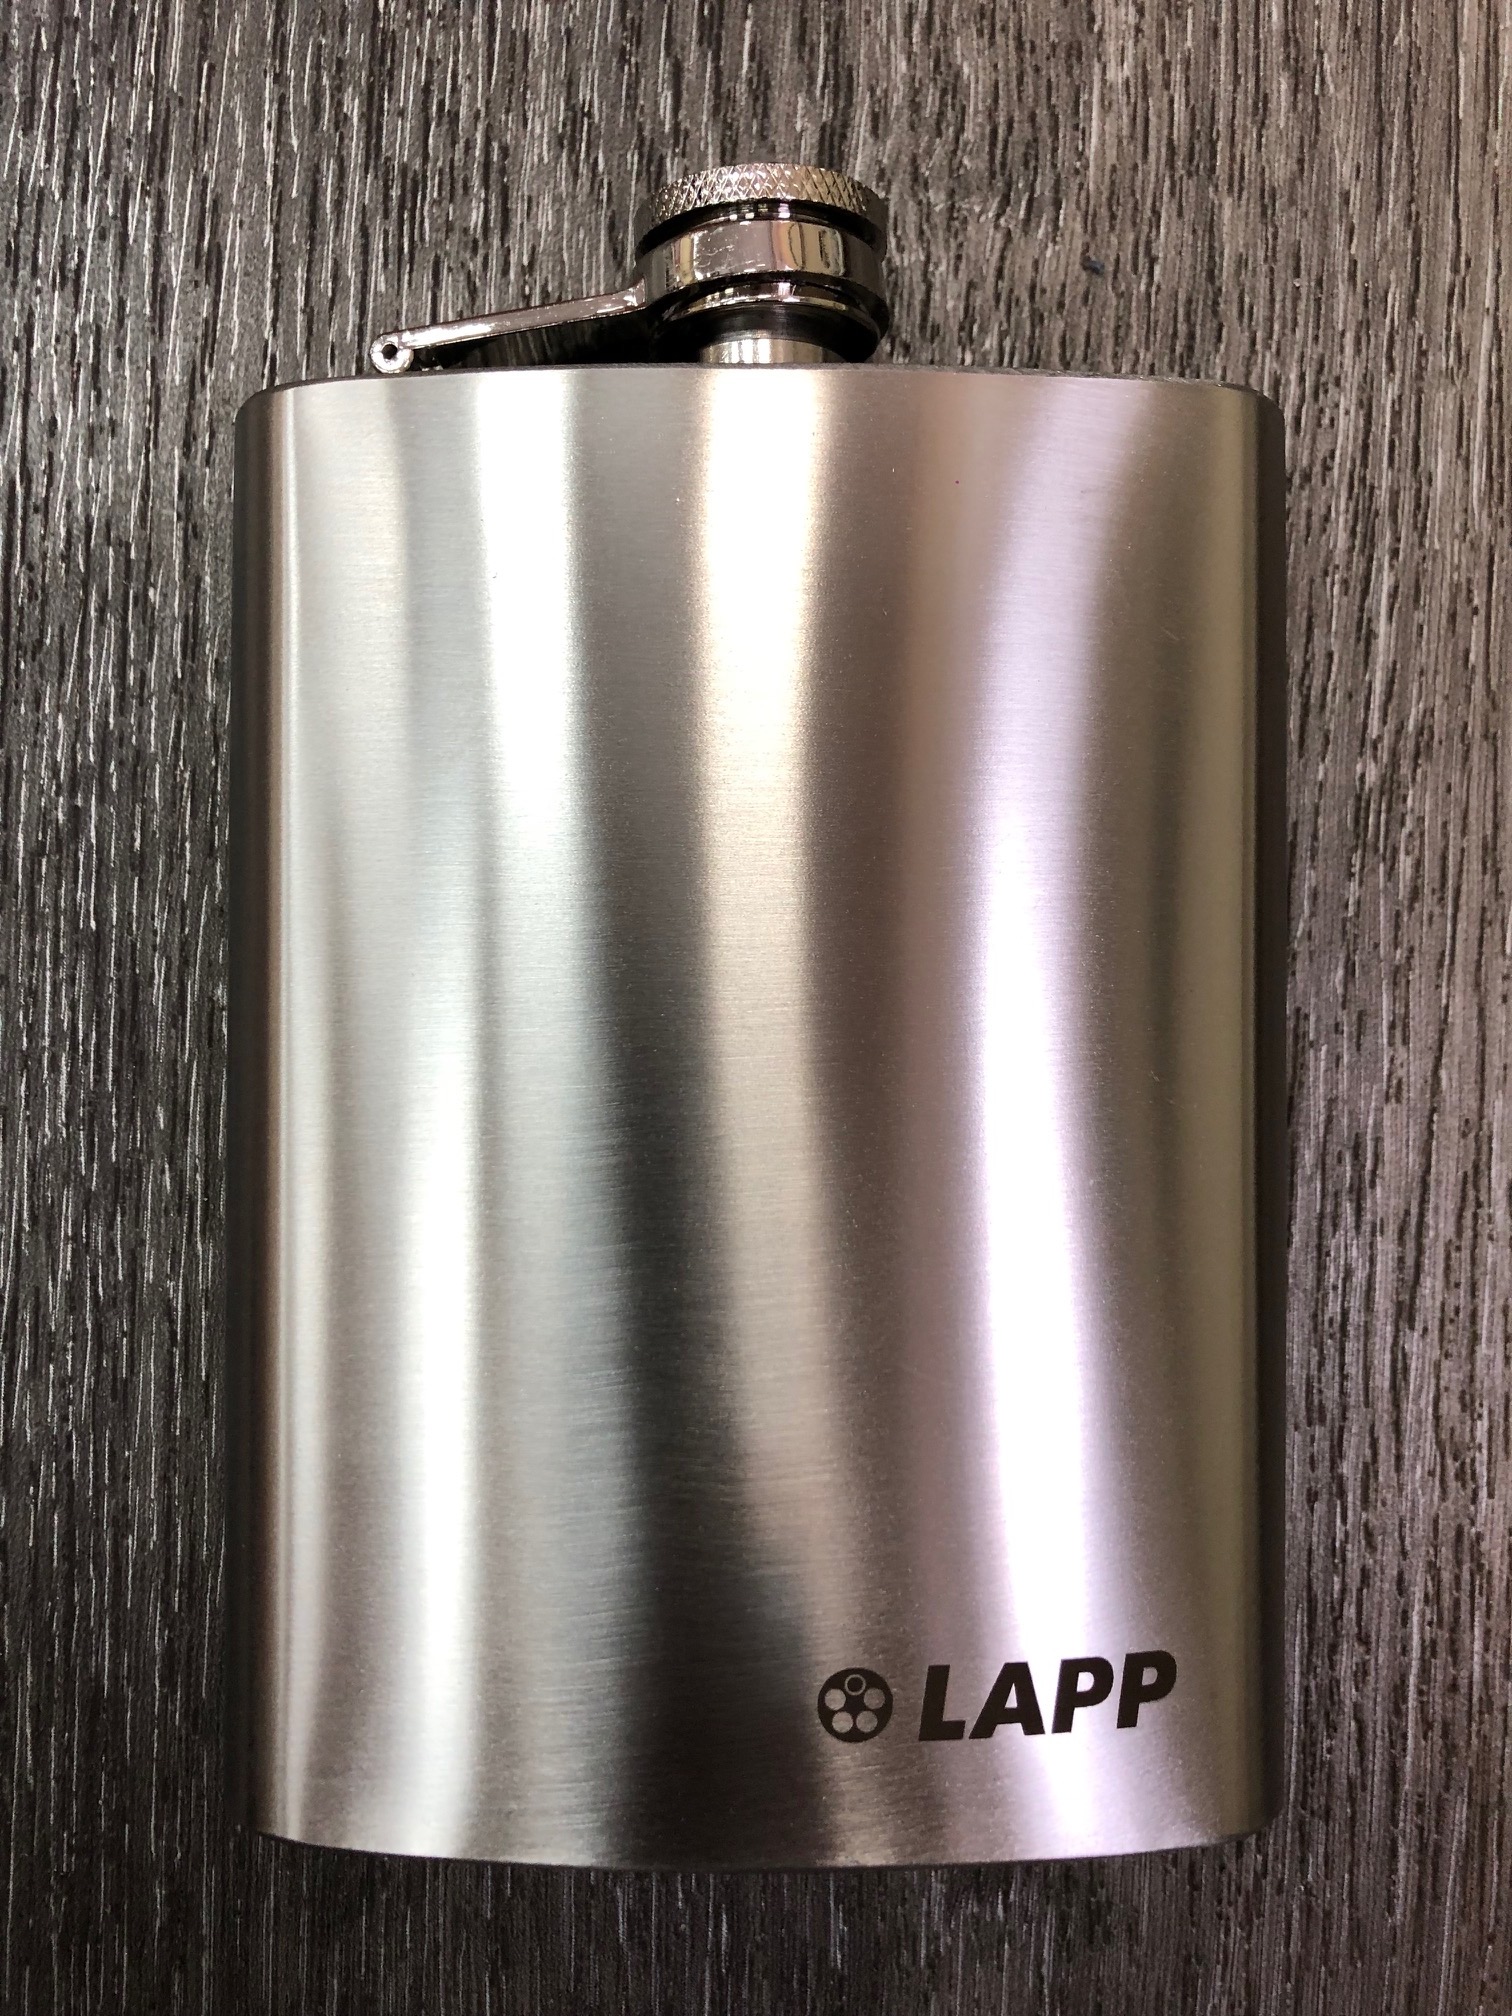 Металическая фляга с гравировкой логотипа LAPP